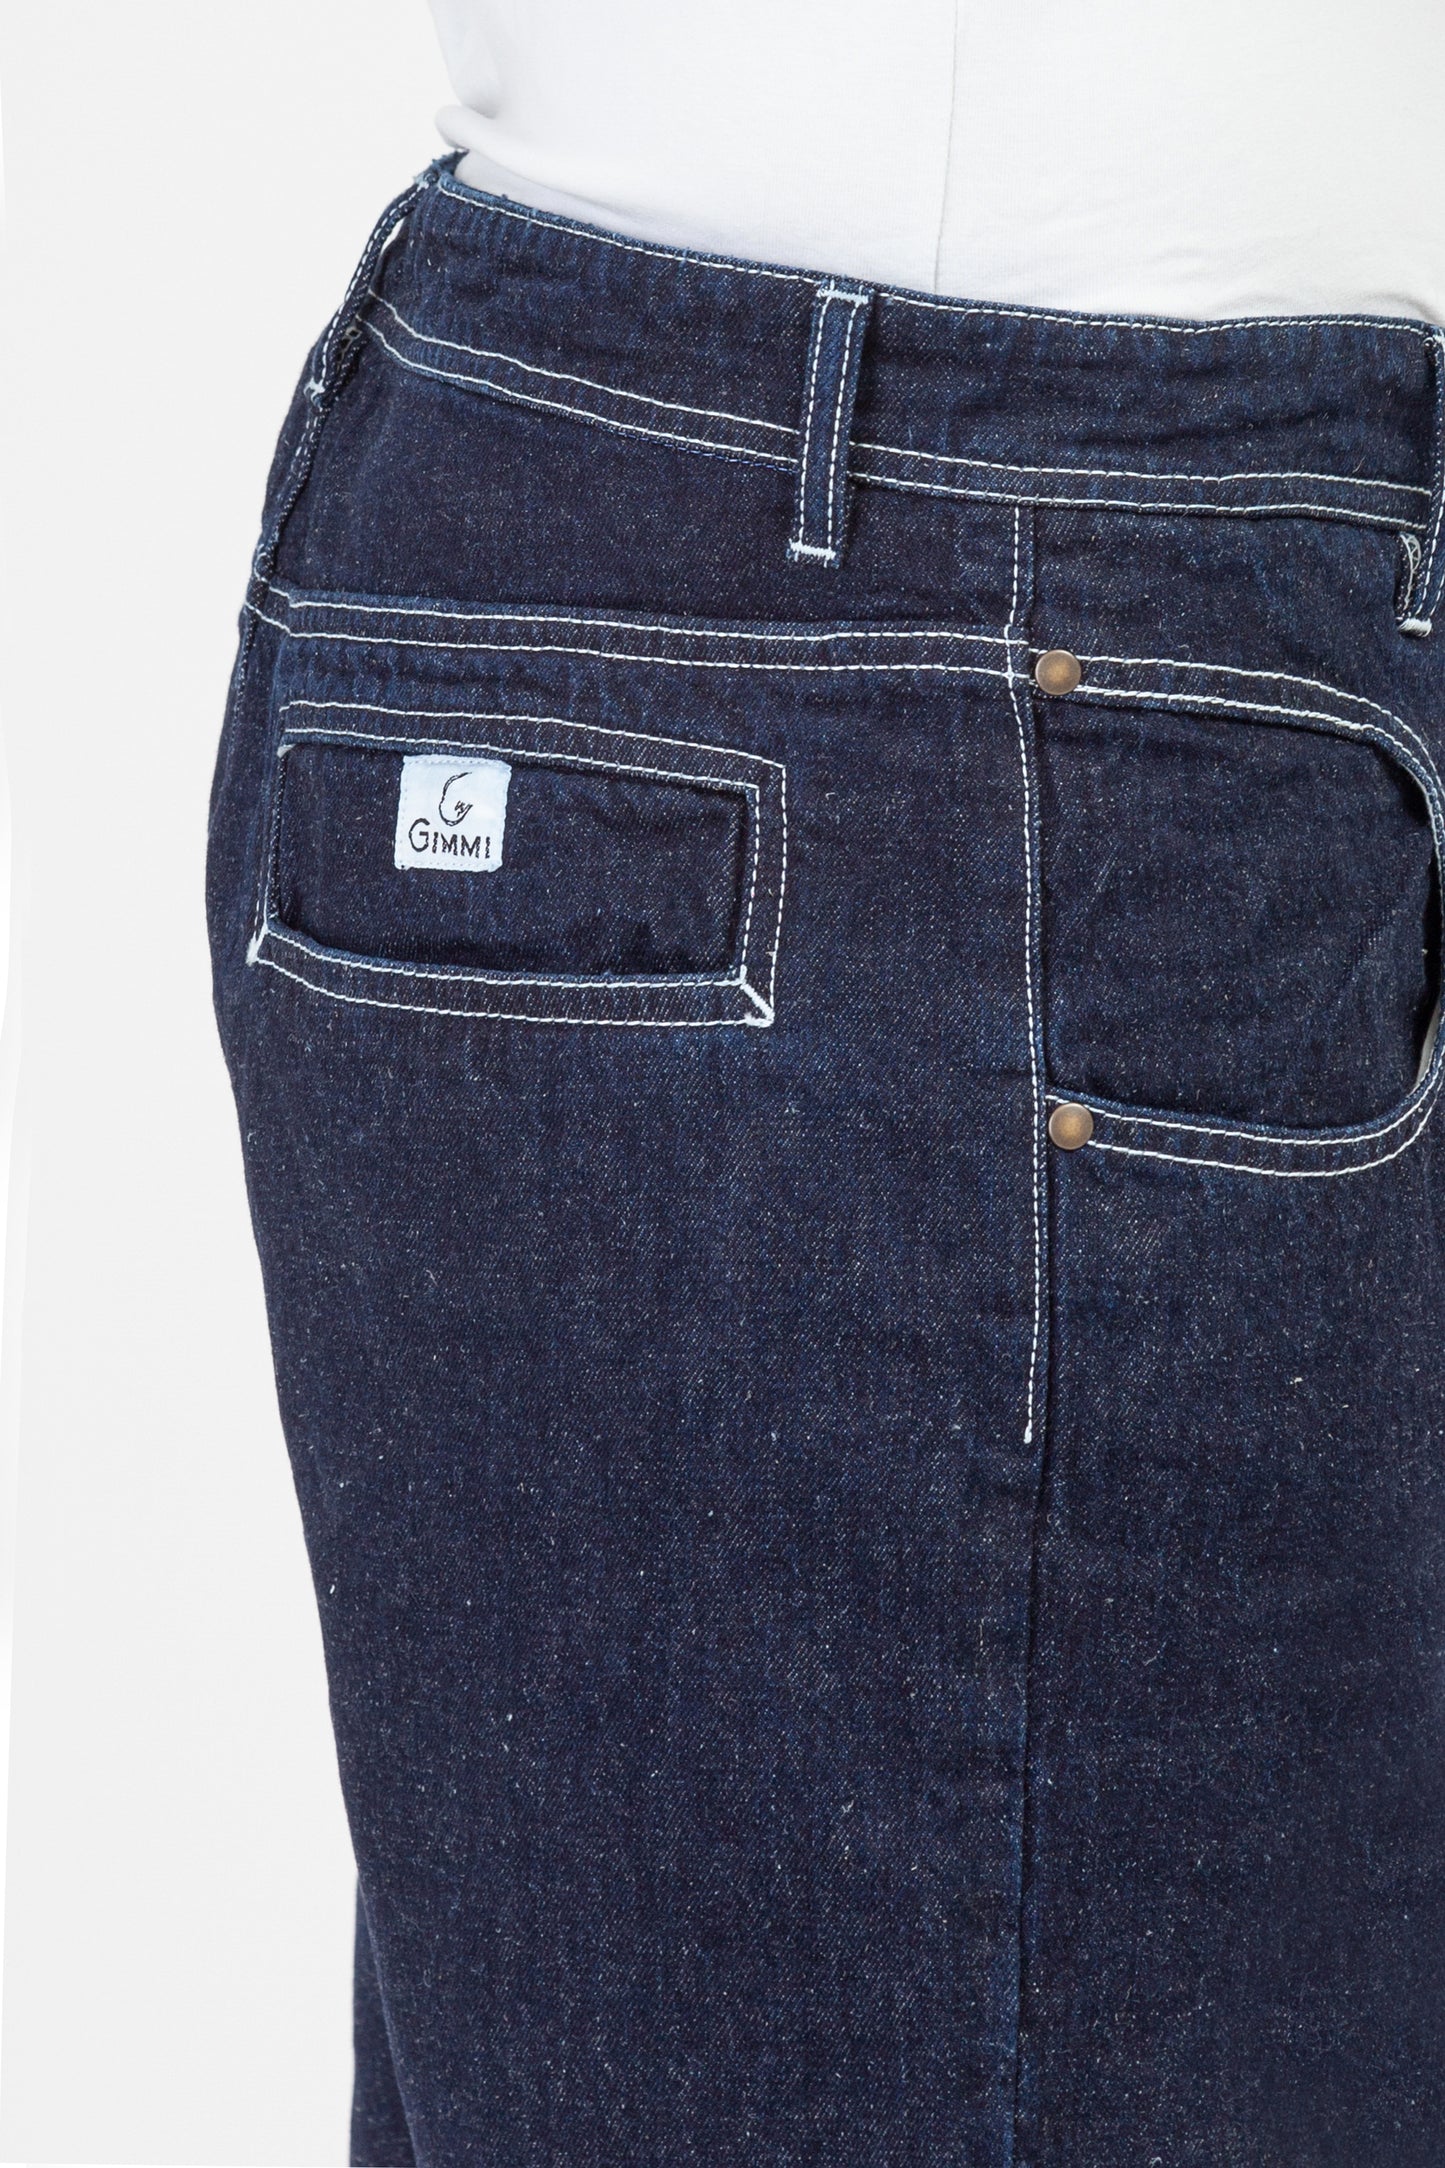 Jeans-short-Amerigo-denim-canapa-dettaglio1